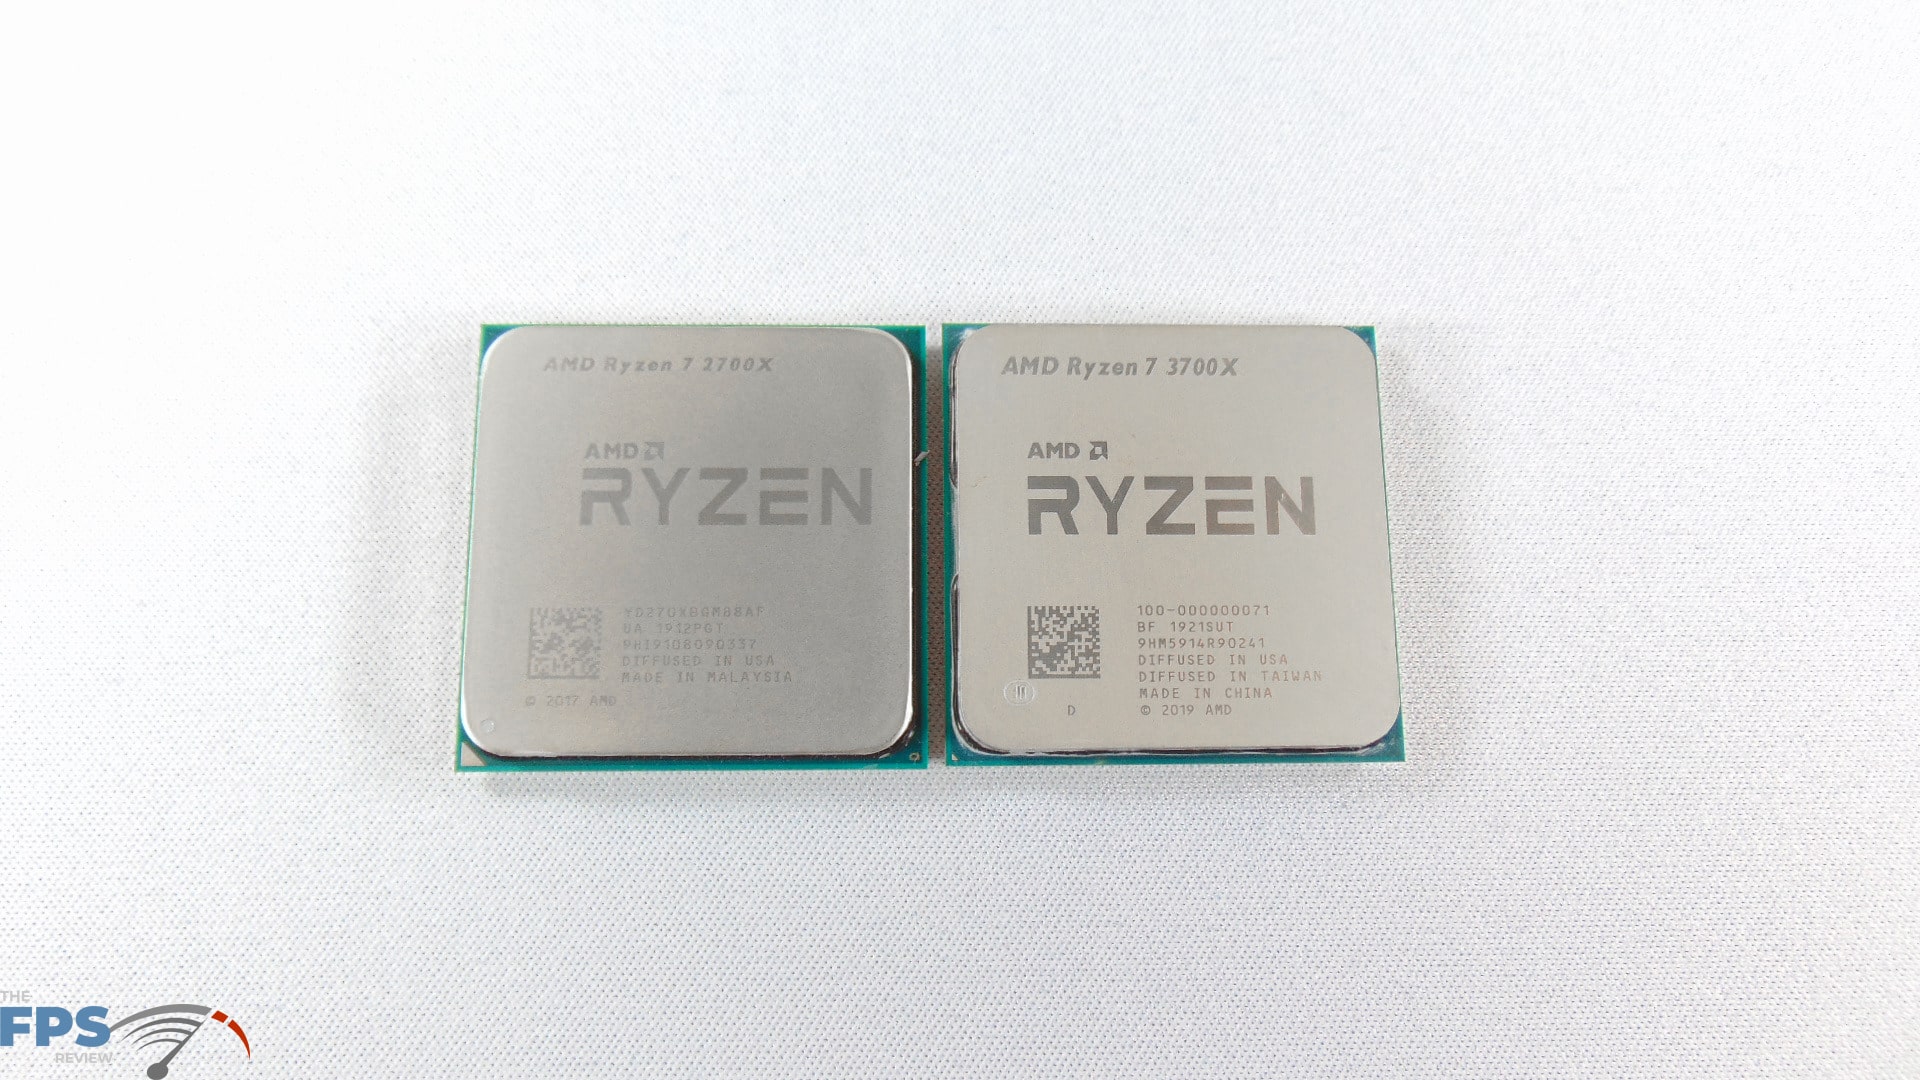 Ryzen 7 2700x En 2020 Outlet, 58% OFF | www.ingeniovirtual.com